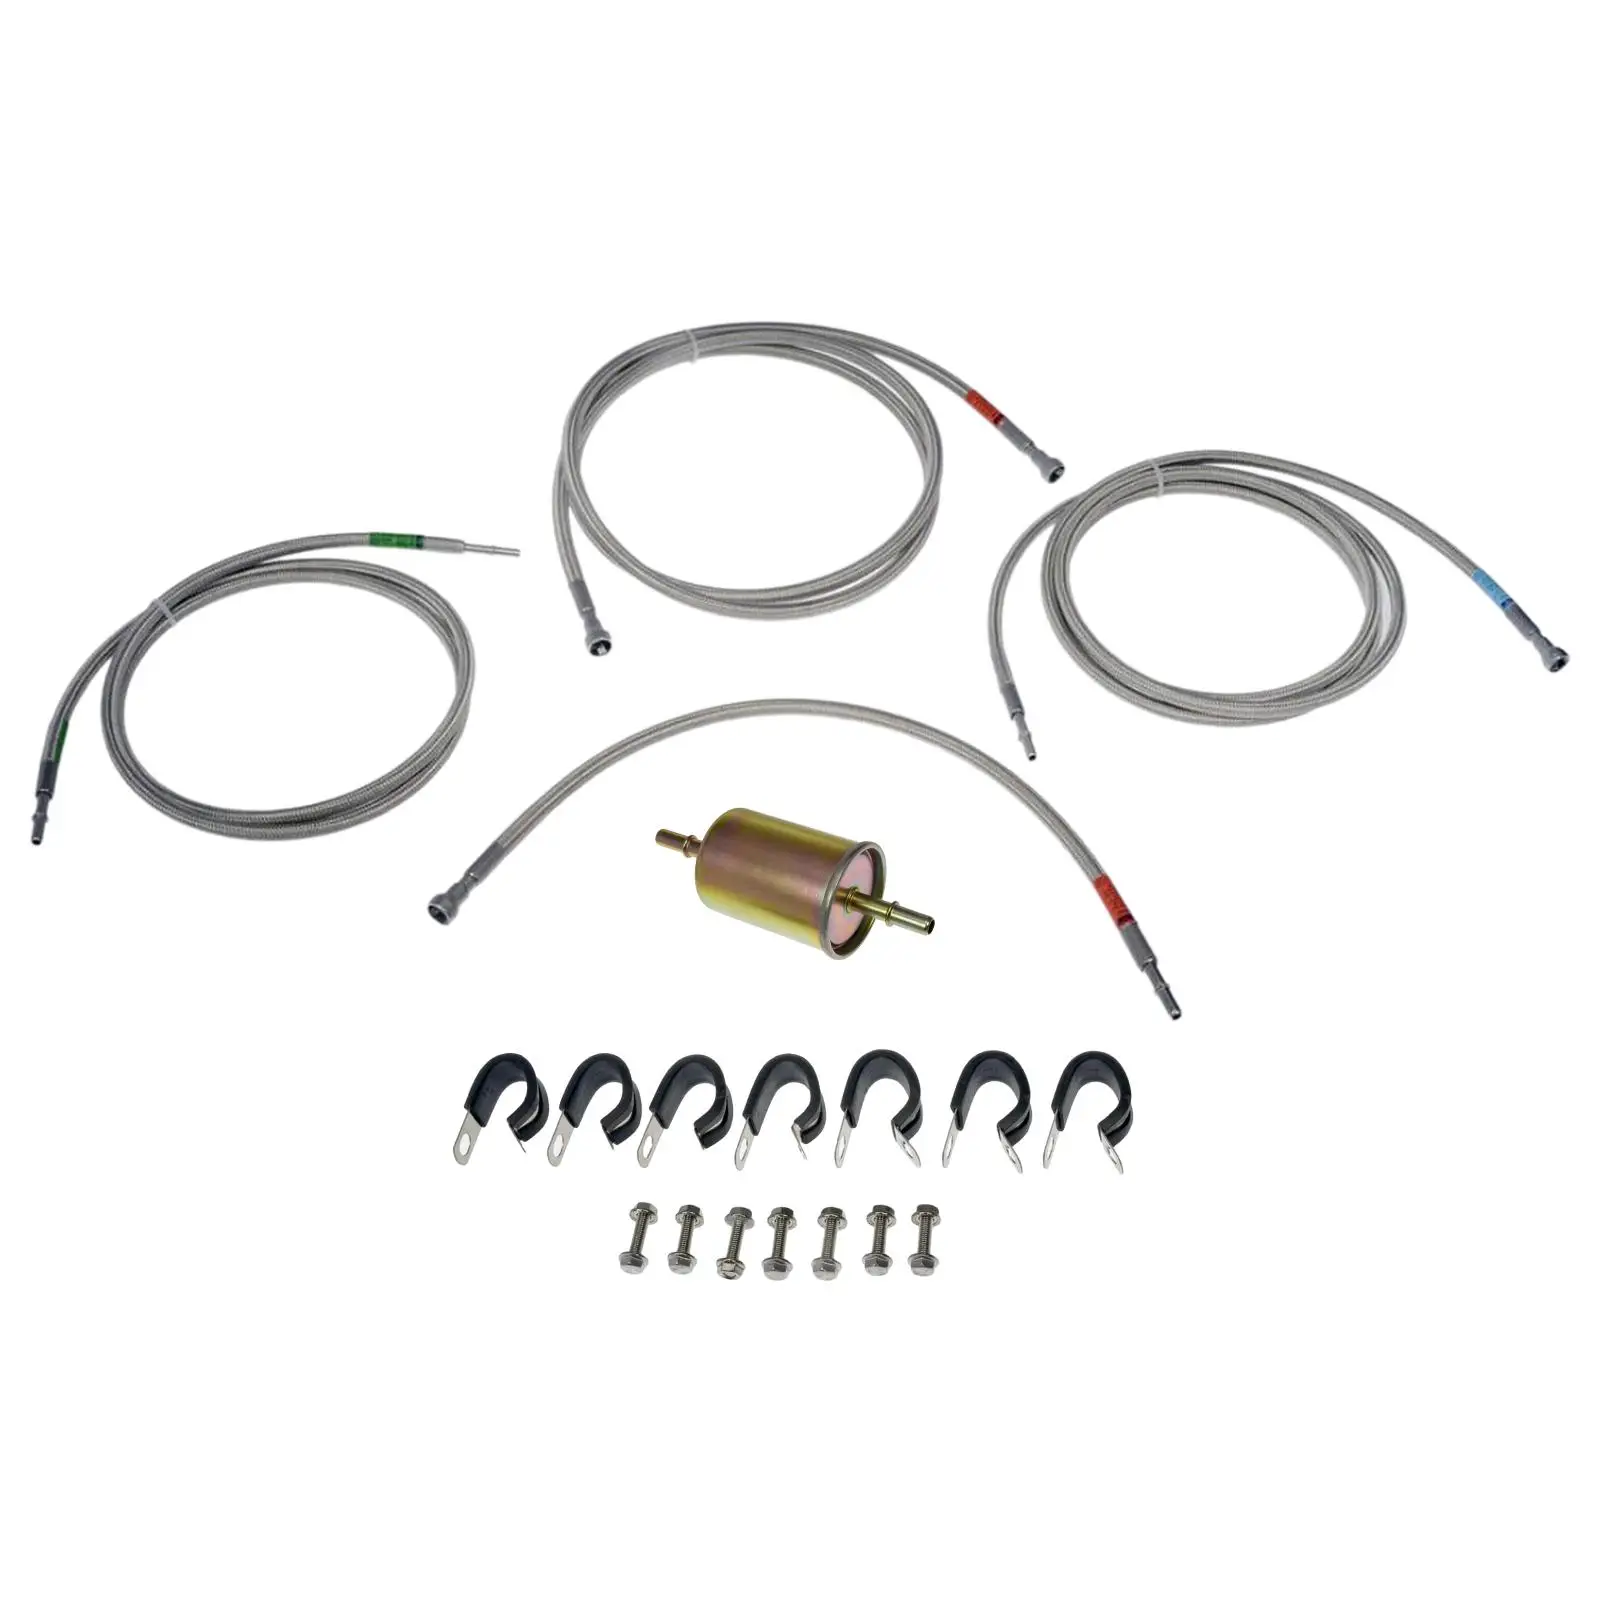 Fuel Line 819-840 Easy Installation Repair Parts Spare Parts Replaces Durable Accessories for Chevrolet Silverado 1500 2500